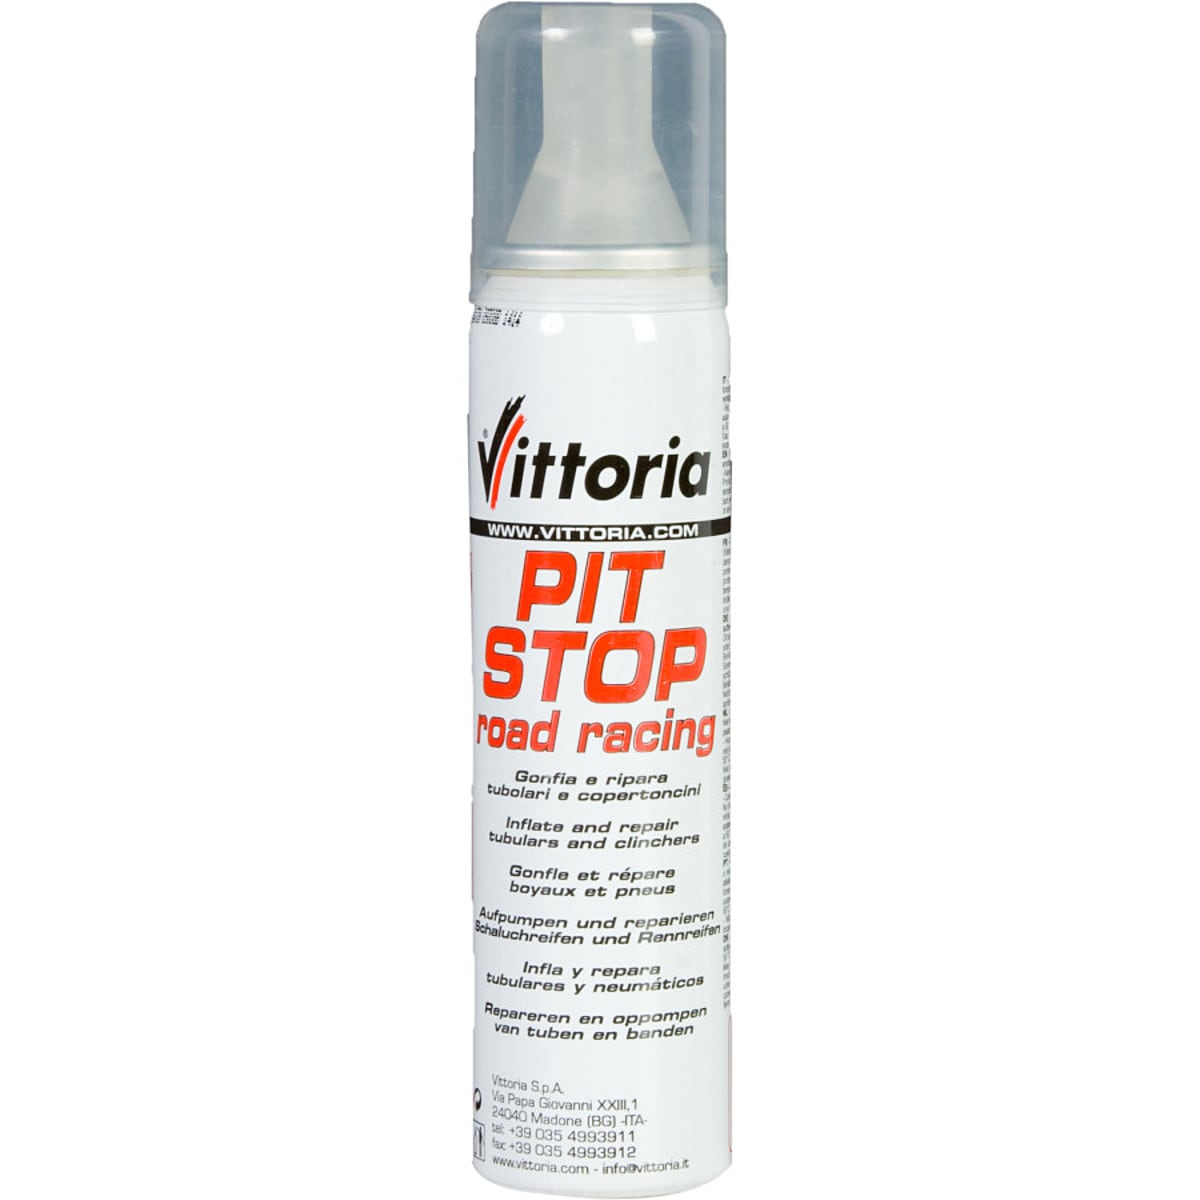 Vittoria Pit-Stop Road Racing Tube and Tire Repair Kit